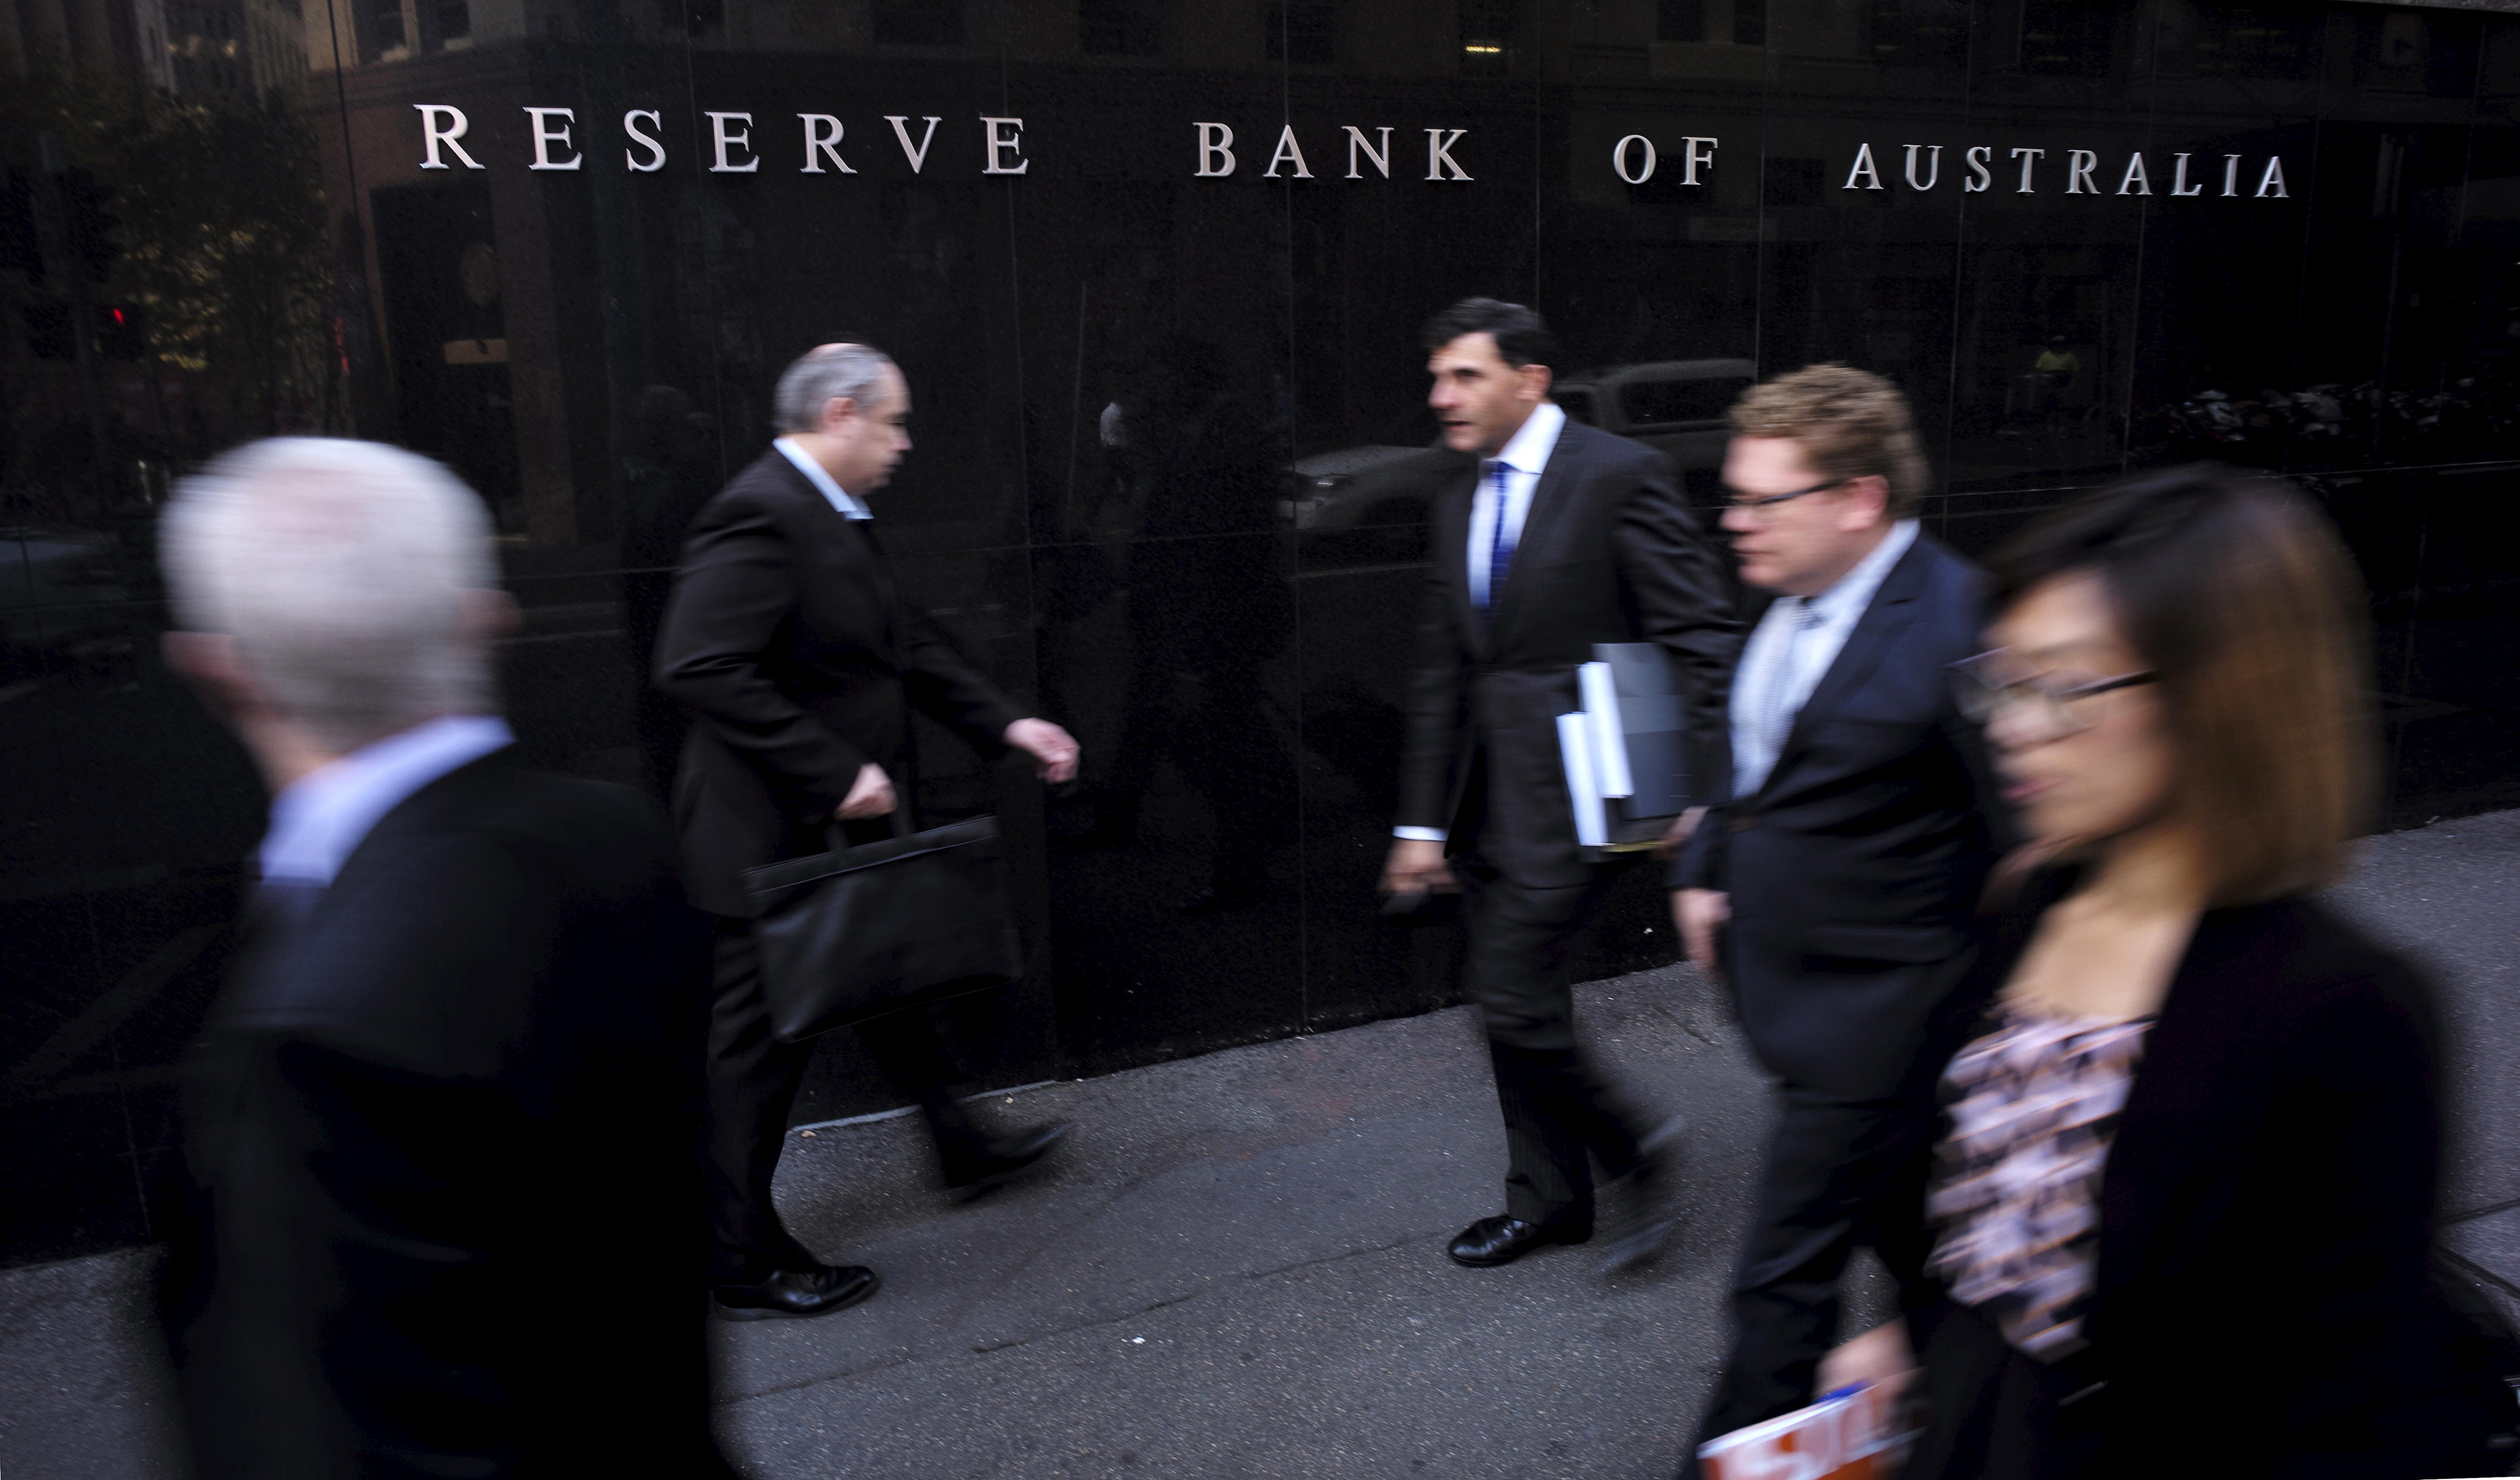 四男一女，都穿着西装，走在前面悉尼的澳大利亚储备银行大楼。” class=